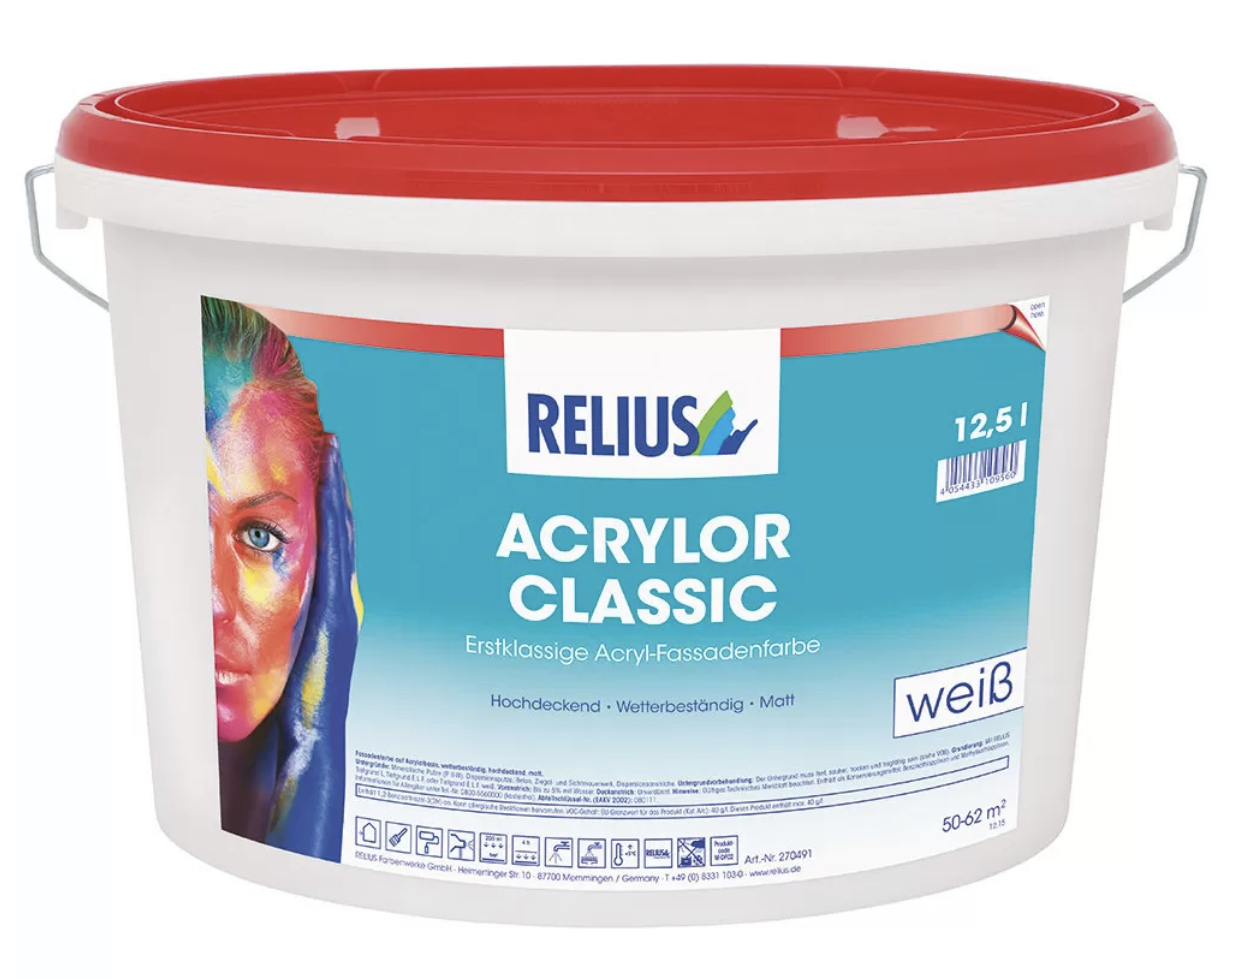 RELIUS Acrylor Classic zeer goed dekkende matte weerbestendige muurverf voor grijze en donkere kleuren voor buiten per 12,5 liter